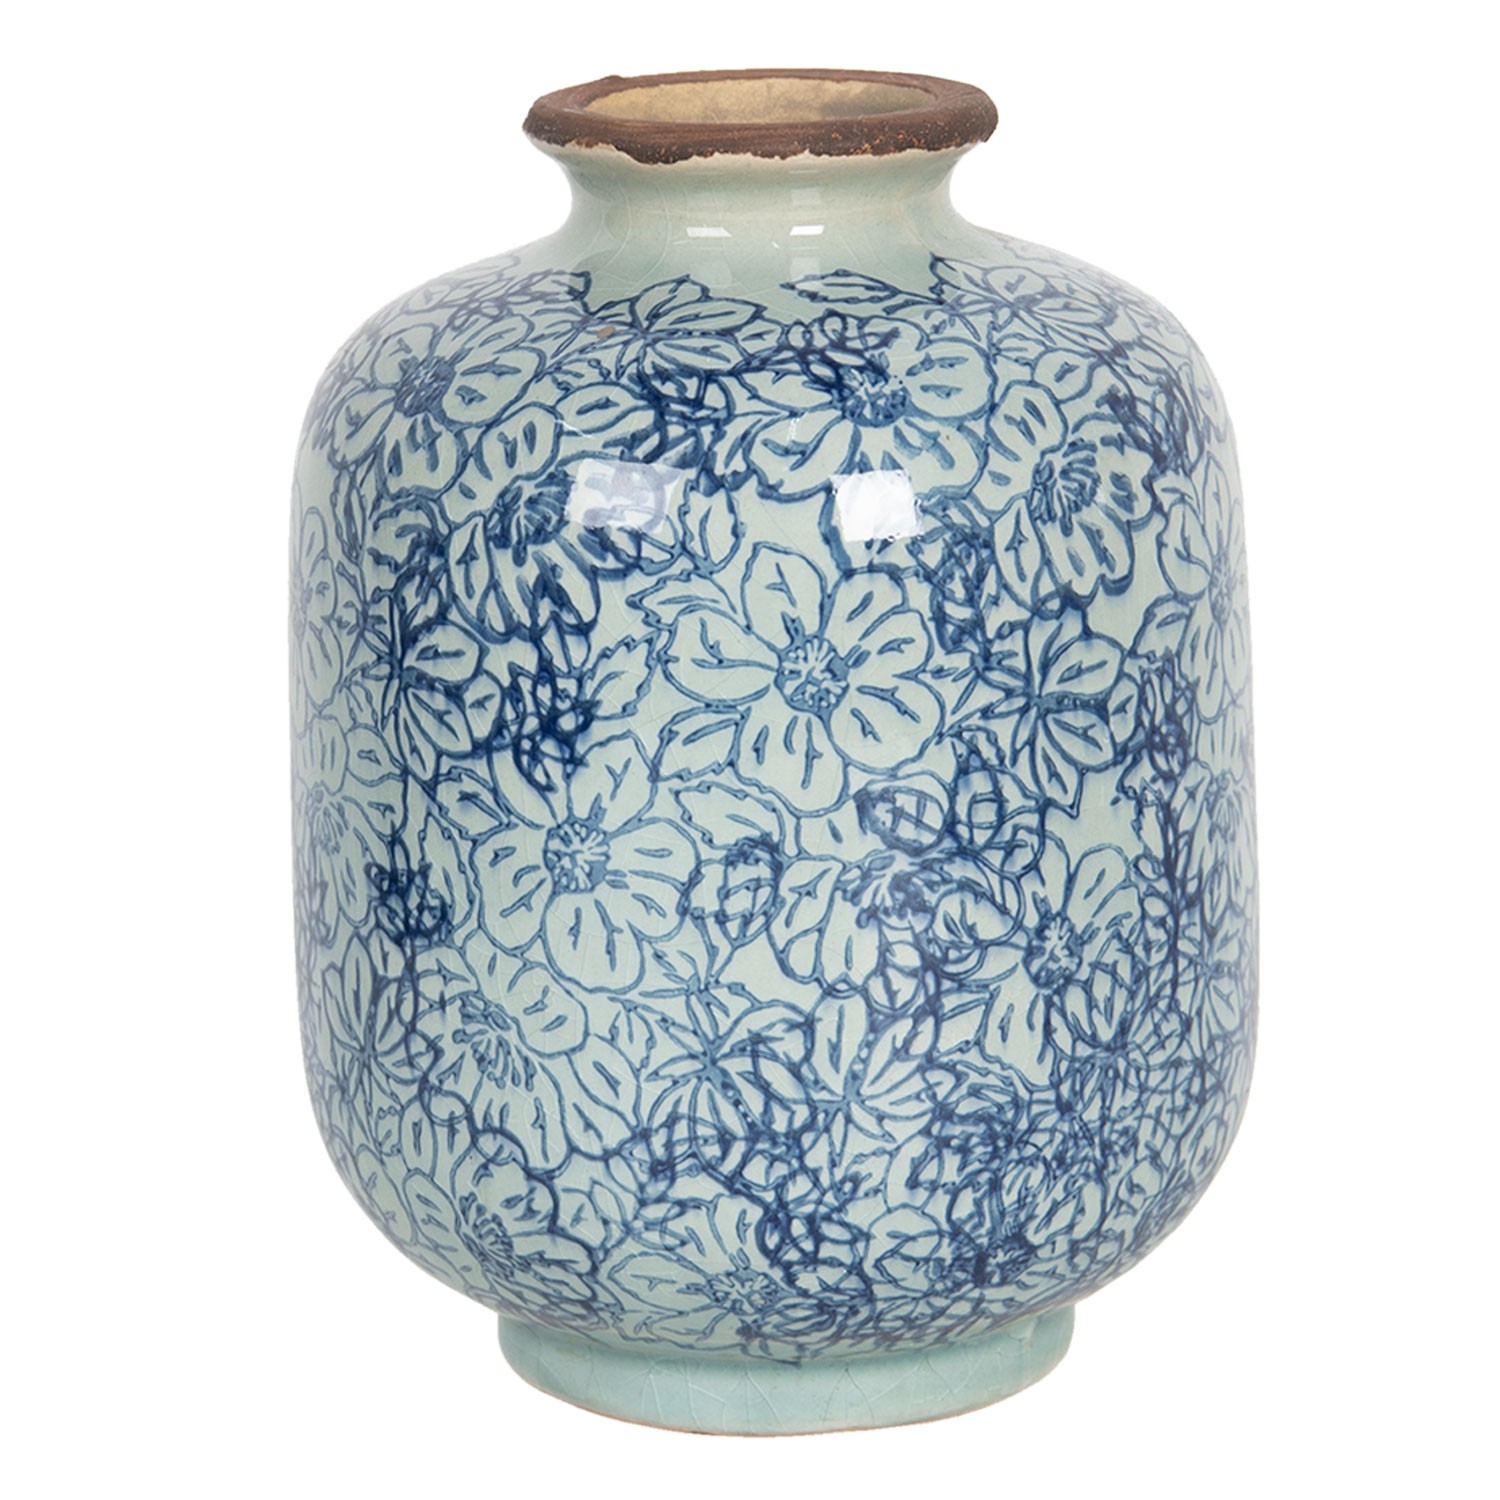 Keramická váza ve vintage stylu s modrými kvítky Bleues – Ø 10*15 cm  Clayre & Eef